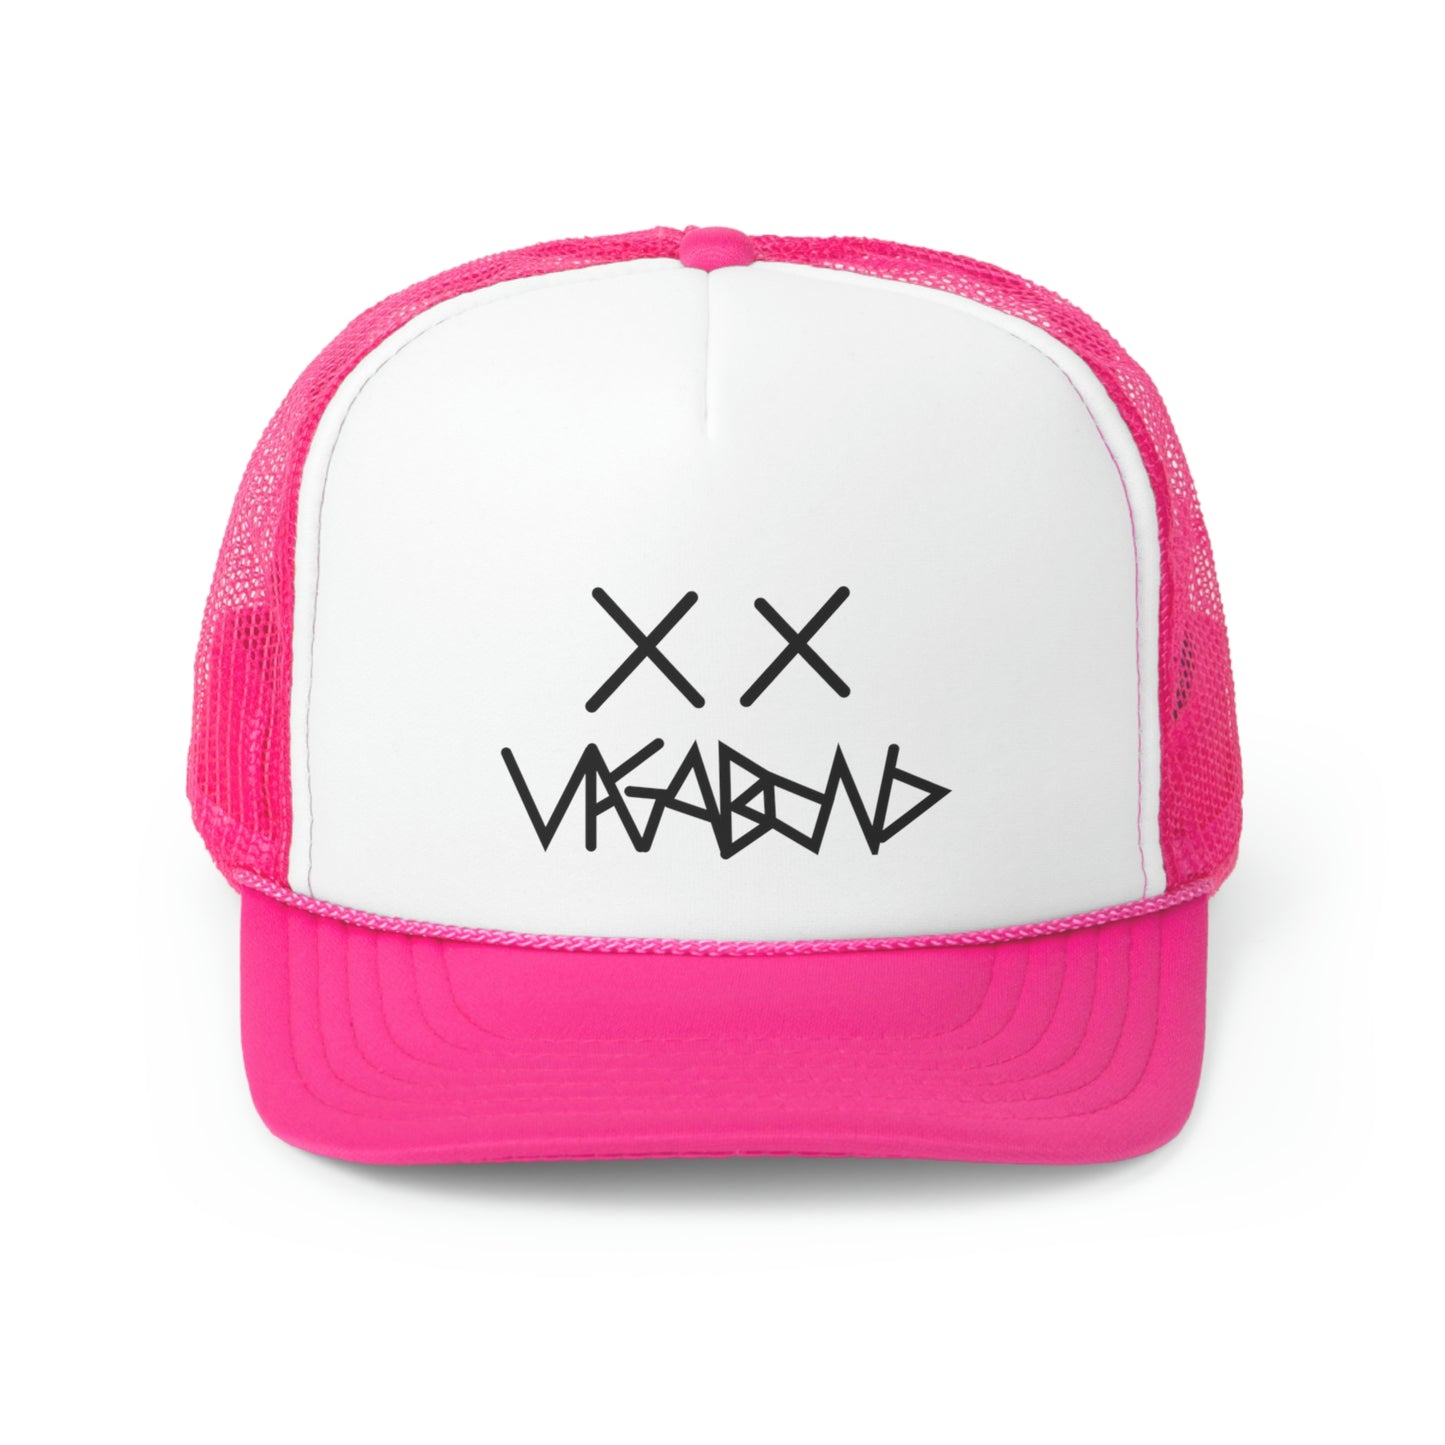 Vintage Vagabond Trucker-Hat